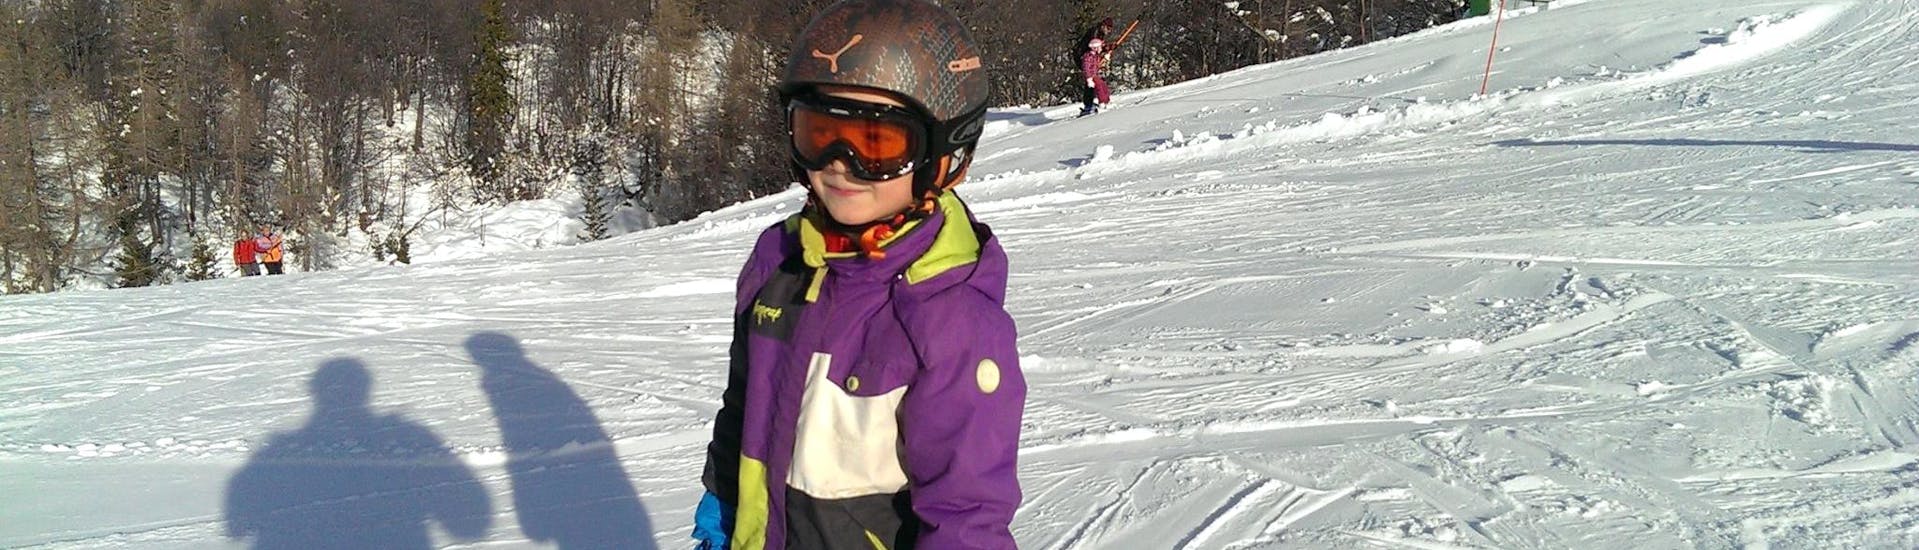 Ein Kind erfreut sich am maßgeschneiderten Privat-Skikurs für Kinder und an der vollen Aufmerksamkeit seines Skilehrers von der Slovenia Ski School - Für alle Levels.